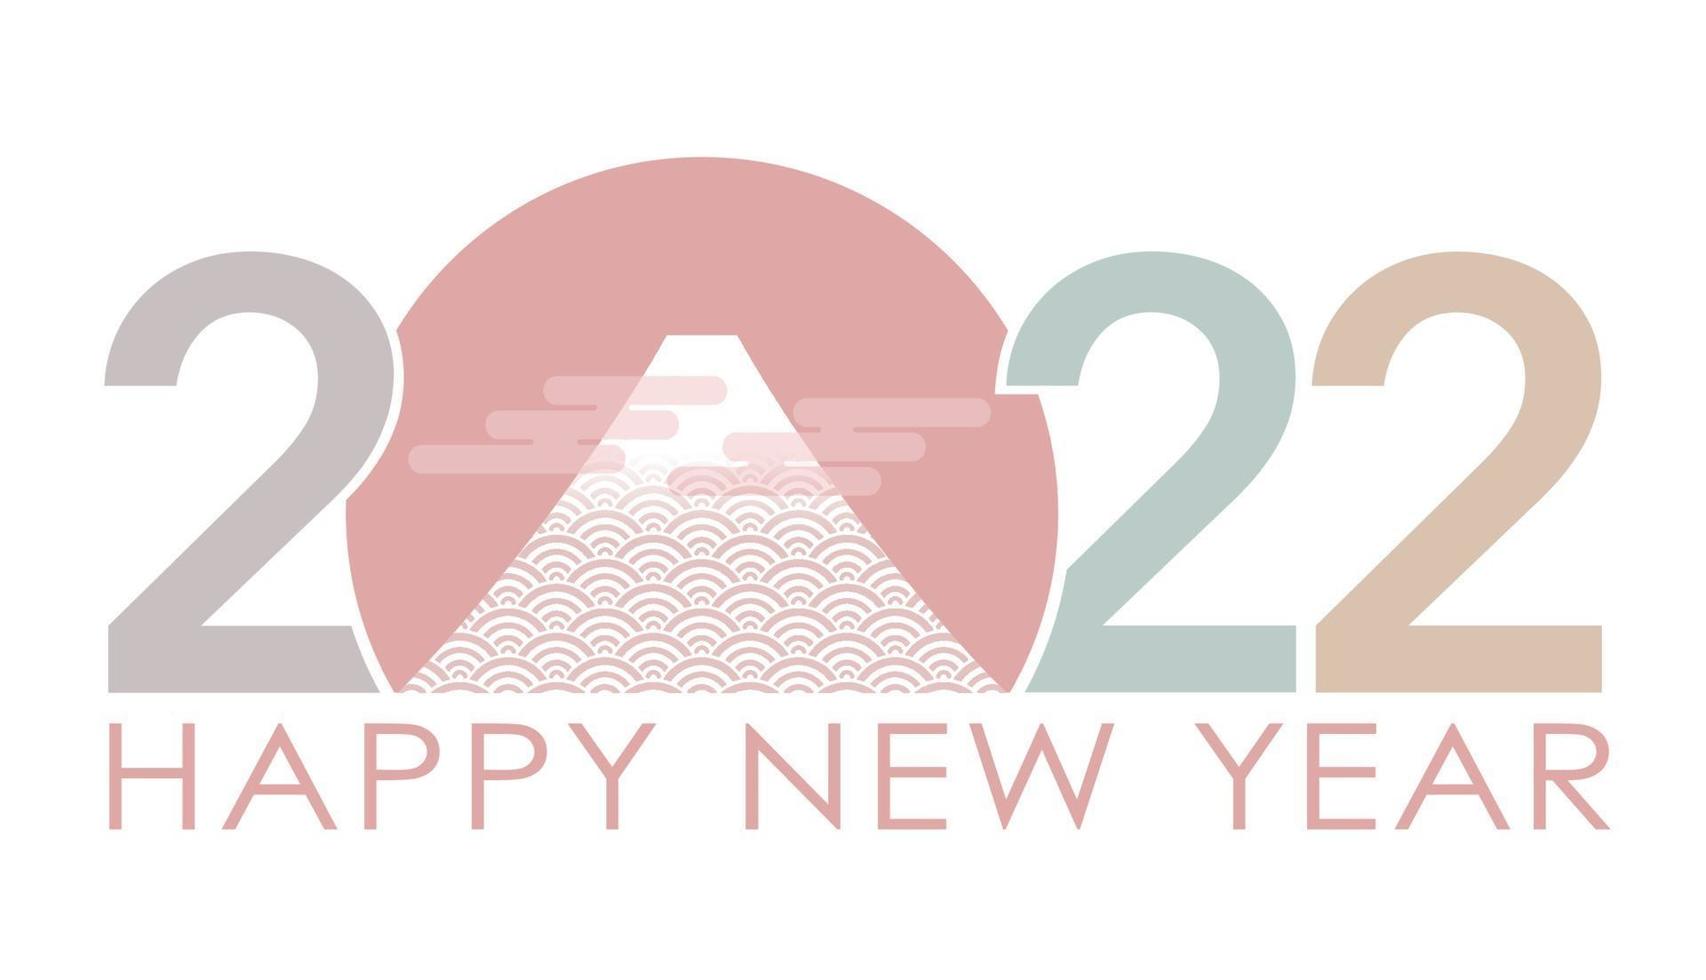 el año 2022 símbolo de saludo de vector de año nuevo con mt. fuji.